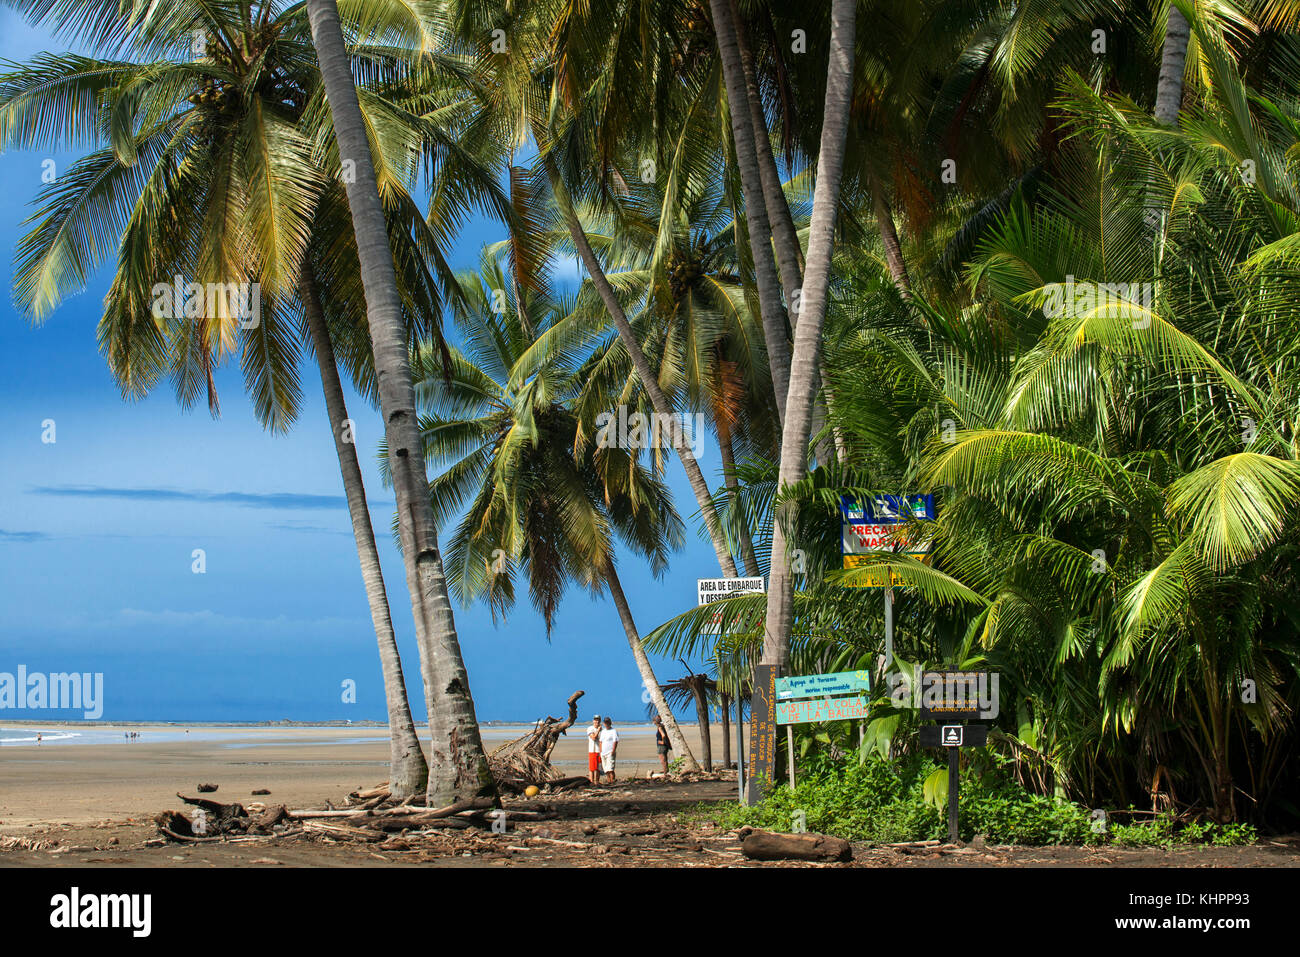 Plage Océan mer palmiers Playa Uvita Paysage Nature Paysage de l'Amérique centrale, le Costa Rica Côte Pacifique Mer. Plage de P national Marino Ballena Banque D'Images